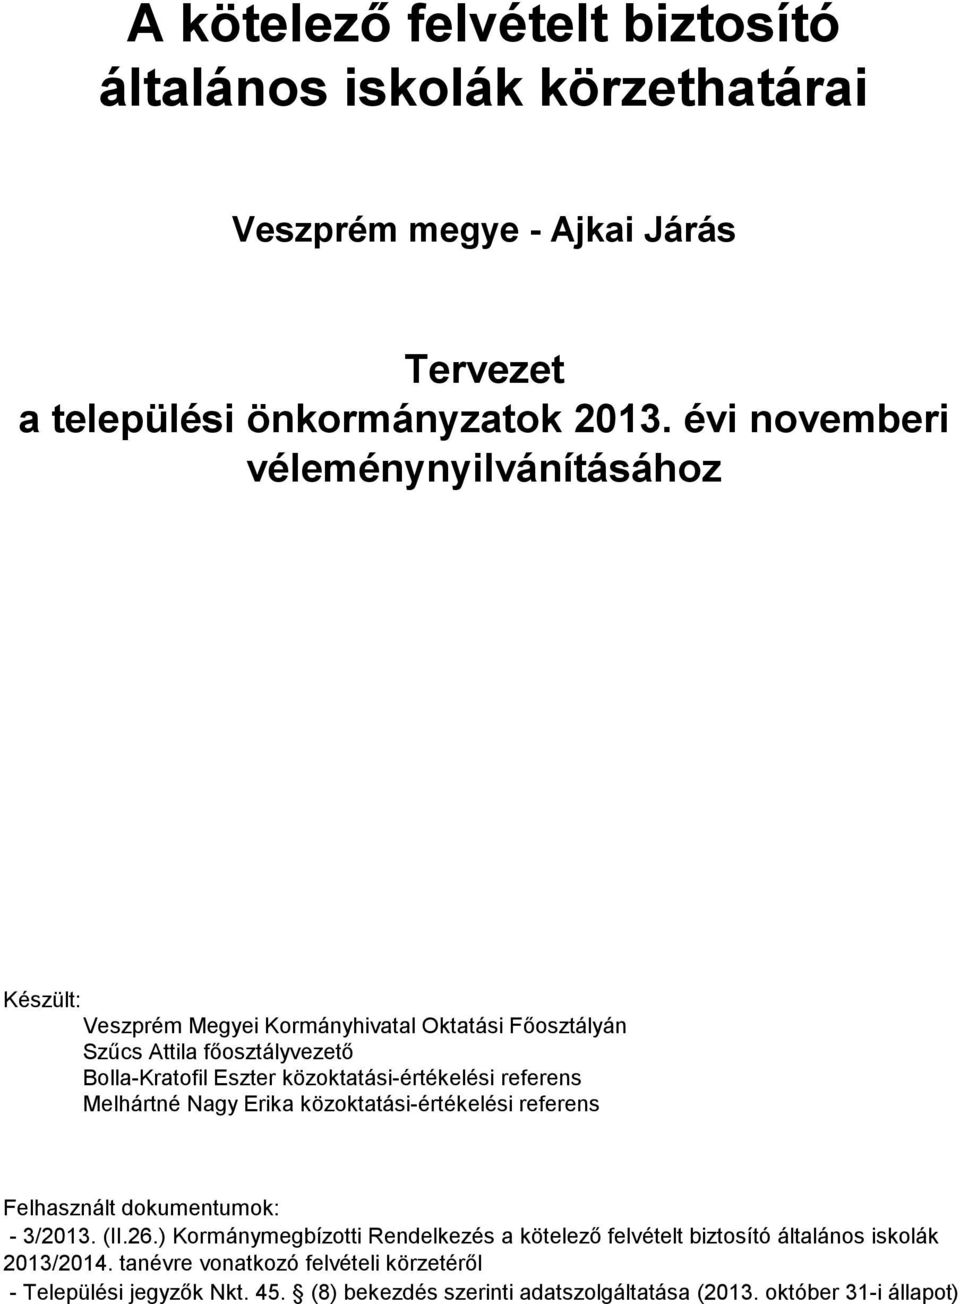 közoktatási-értékelési referens Melhártné Nagy Erika közoktatási-értékelési referens Felhasznált dokumentumok: - 3/2013. (II.26.